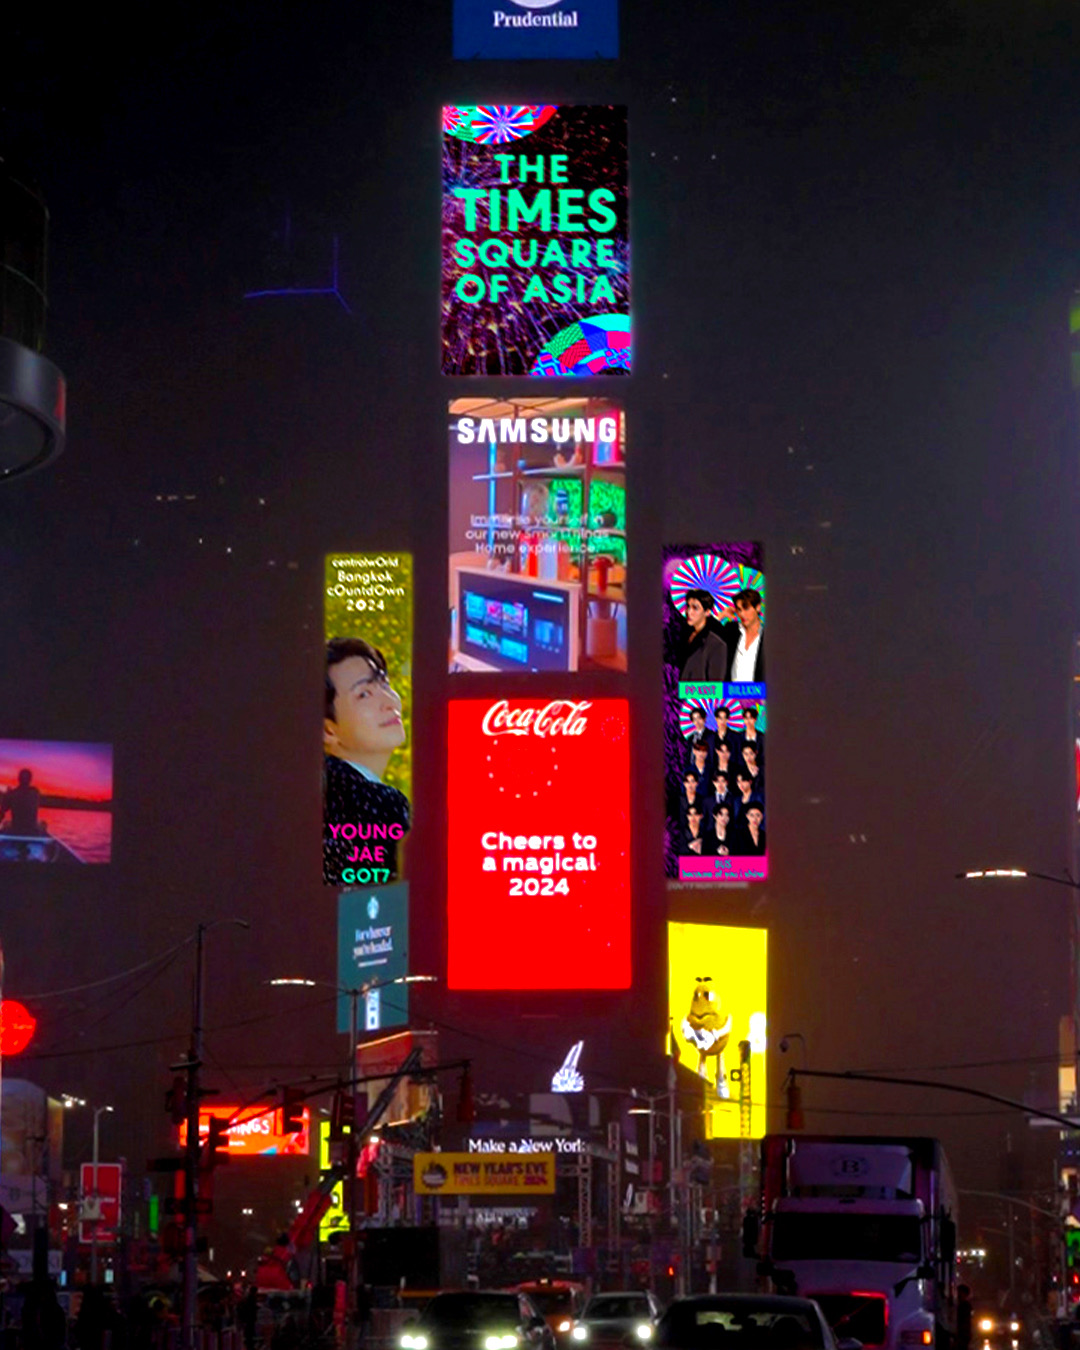 ‘เซ็นทรัลเวิลด์’ เคานต์ดาวน์แลนด์มาร์ก ใจกลางกรุงเทพฯ ‘Times Square Of Asia’ หนึ่งเดียวของไทย ที่ร่วมฉลองโมเมนท์ส่งท้ายปีบน Times Square New York 5 ปีติดต่อกัน